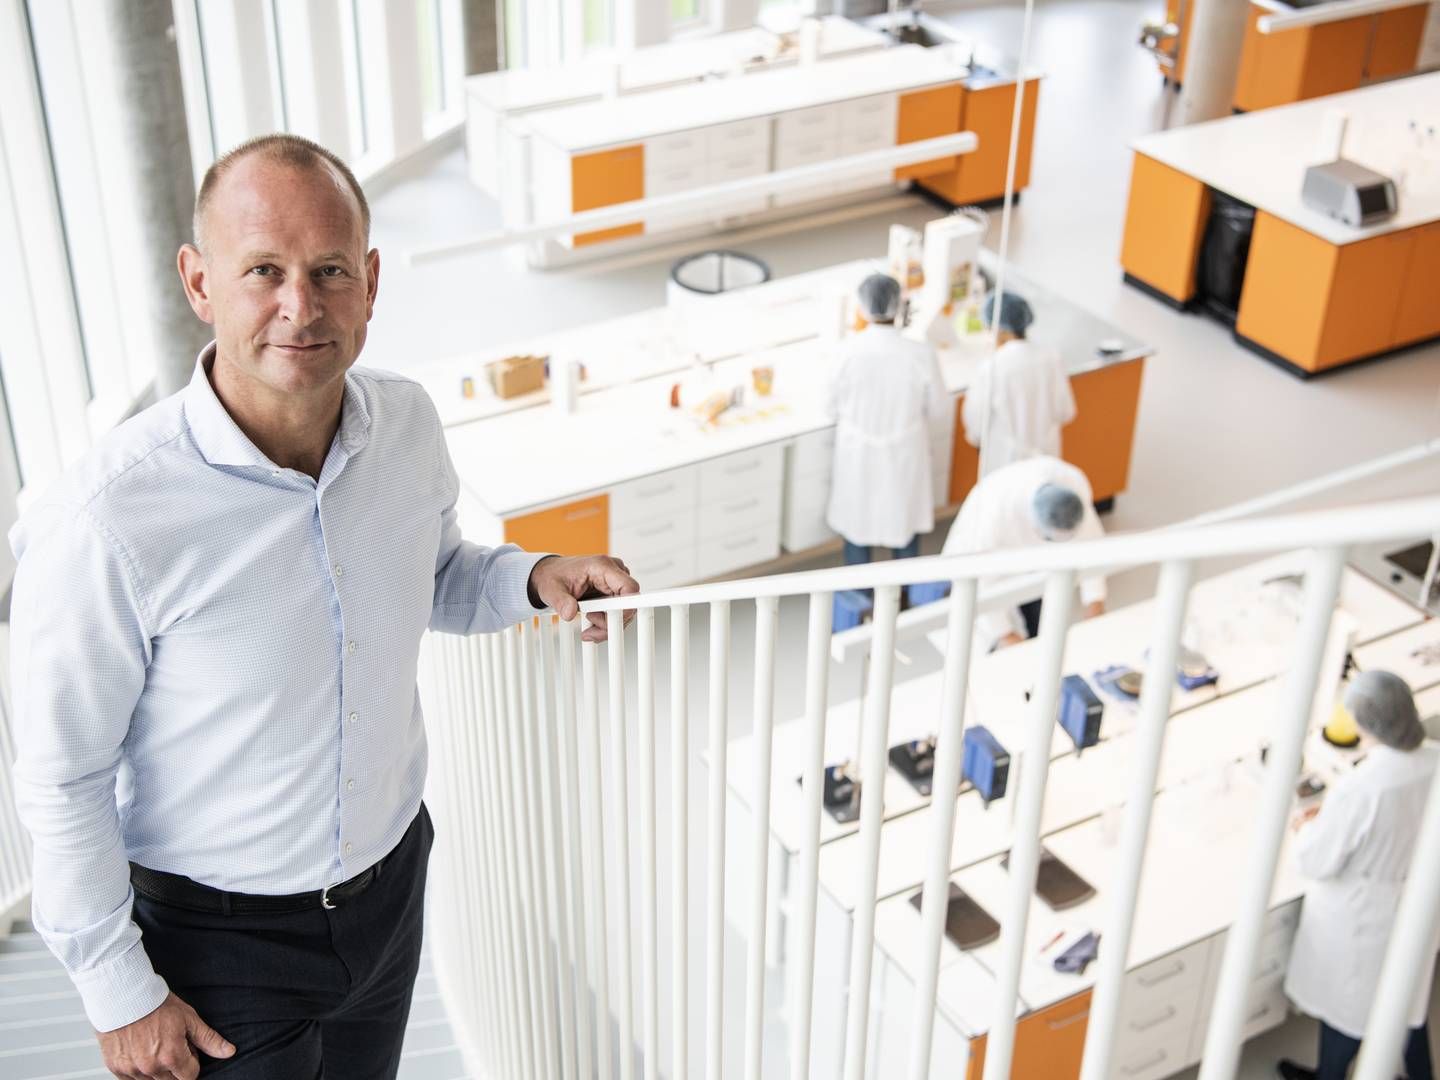 Adm. direktør Søren Holm Jensen kan glæde sig over fremgang i juicekoncernen Co-Ro efter svære år. | Foto: Gregers Tycho/ERH